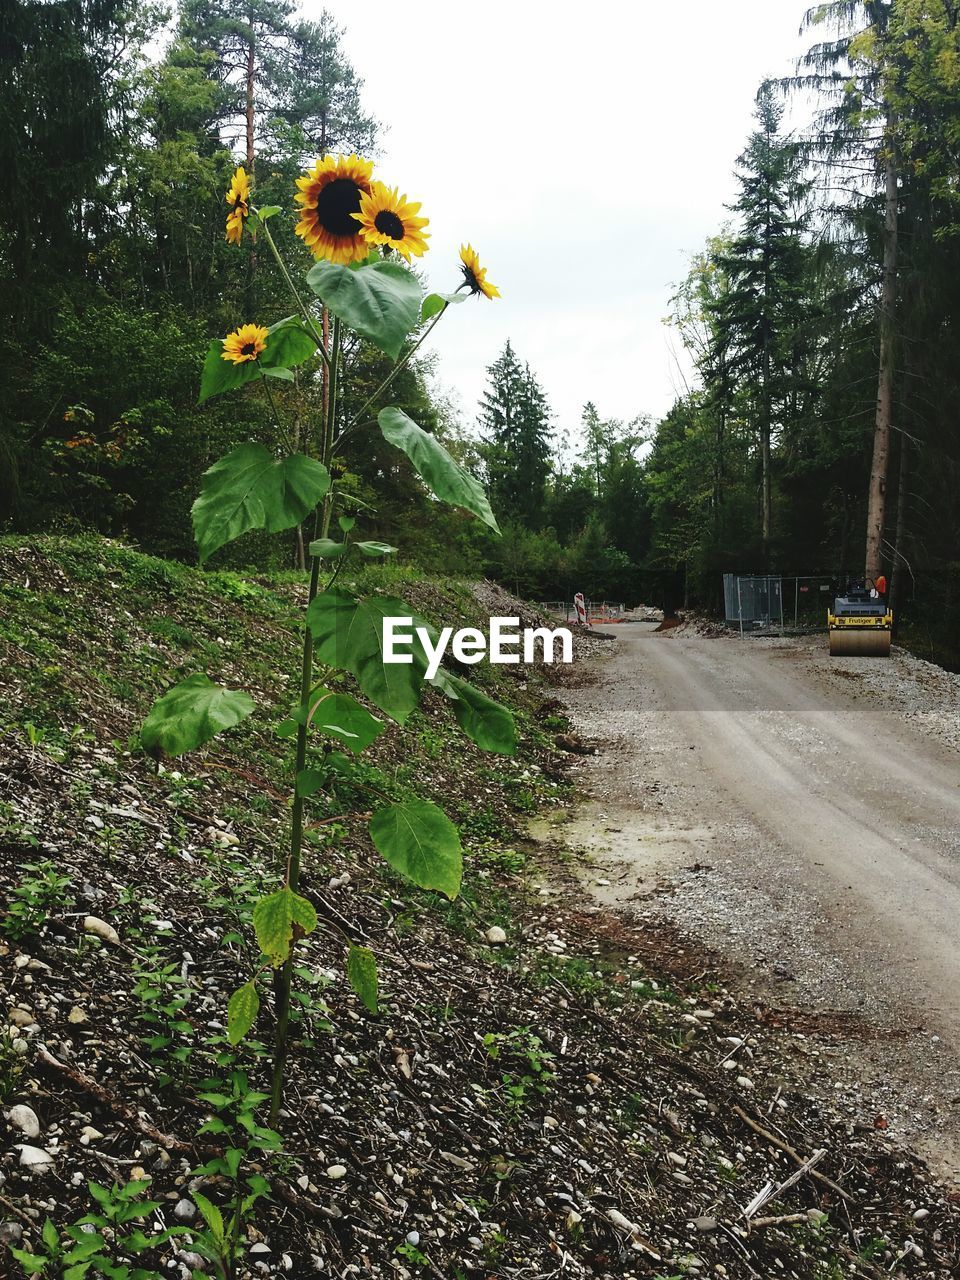 Sunflower plant growing on roadside